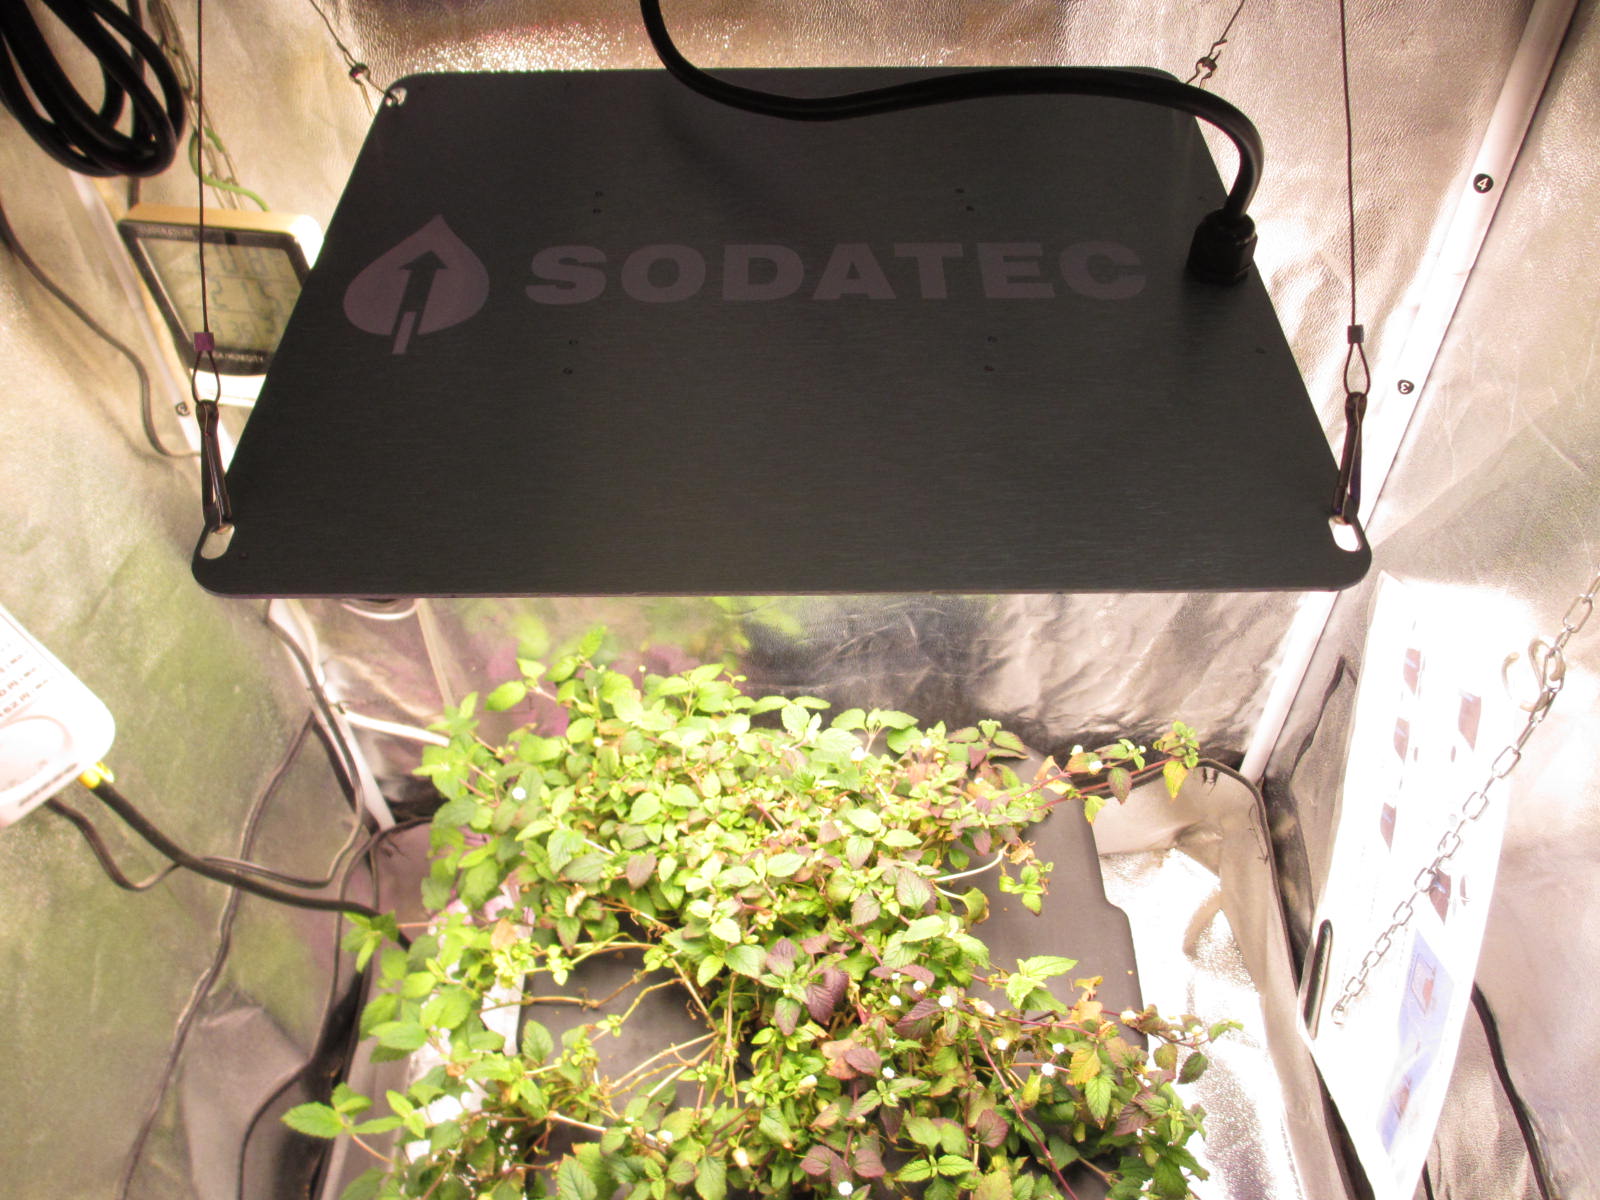 ソダテック LED-01 200W 植物育成LED 超薄型